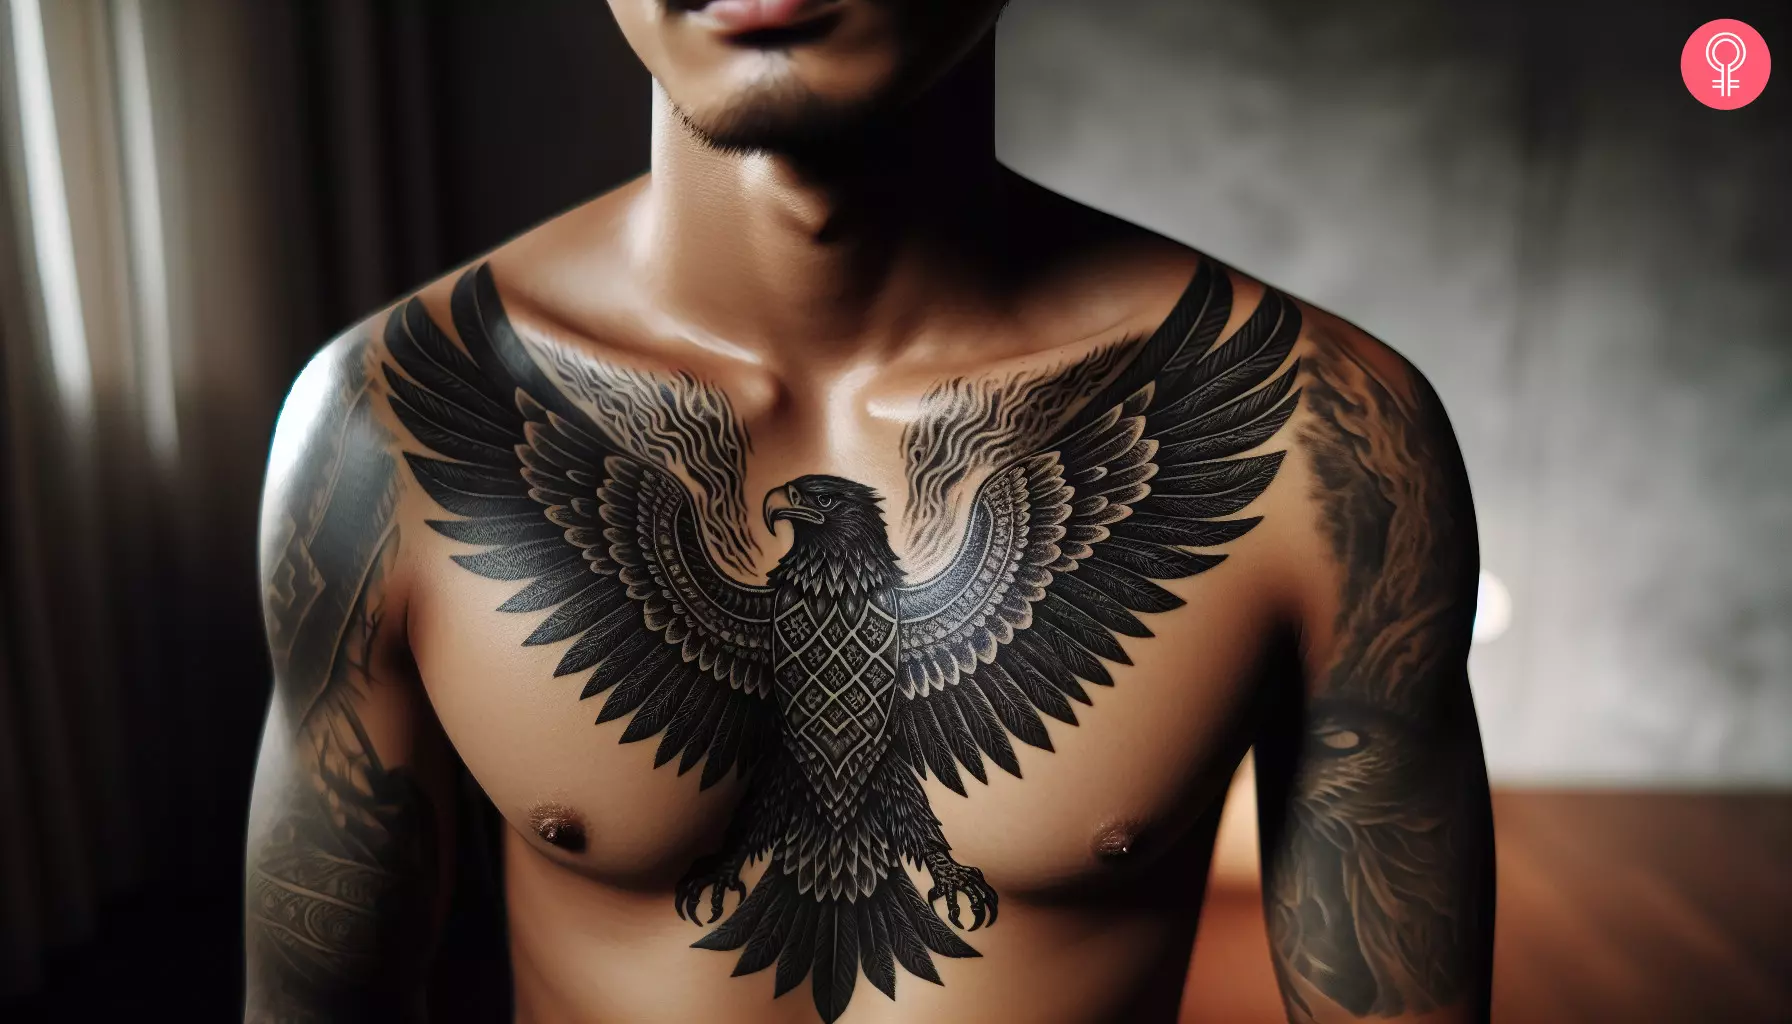 A man showcasing an eagle chest tattoo